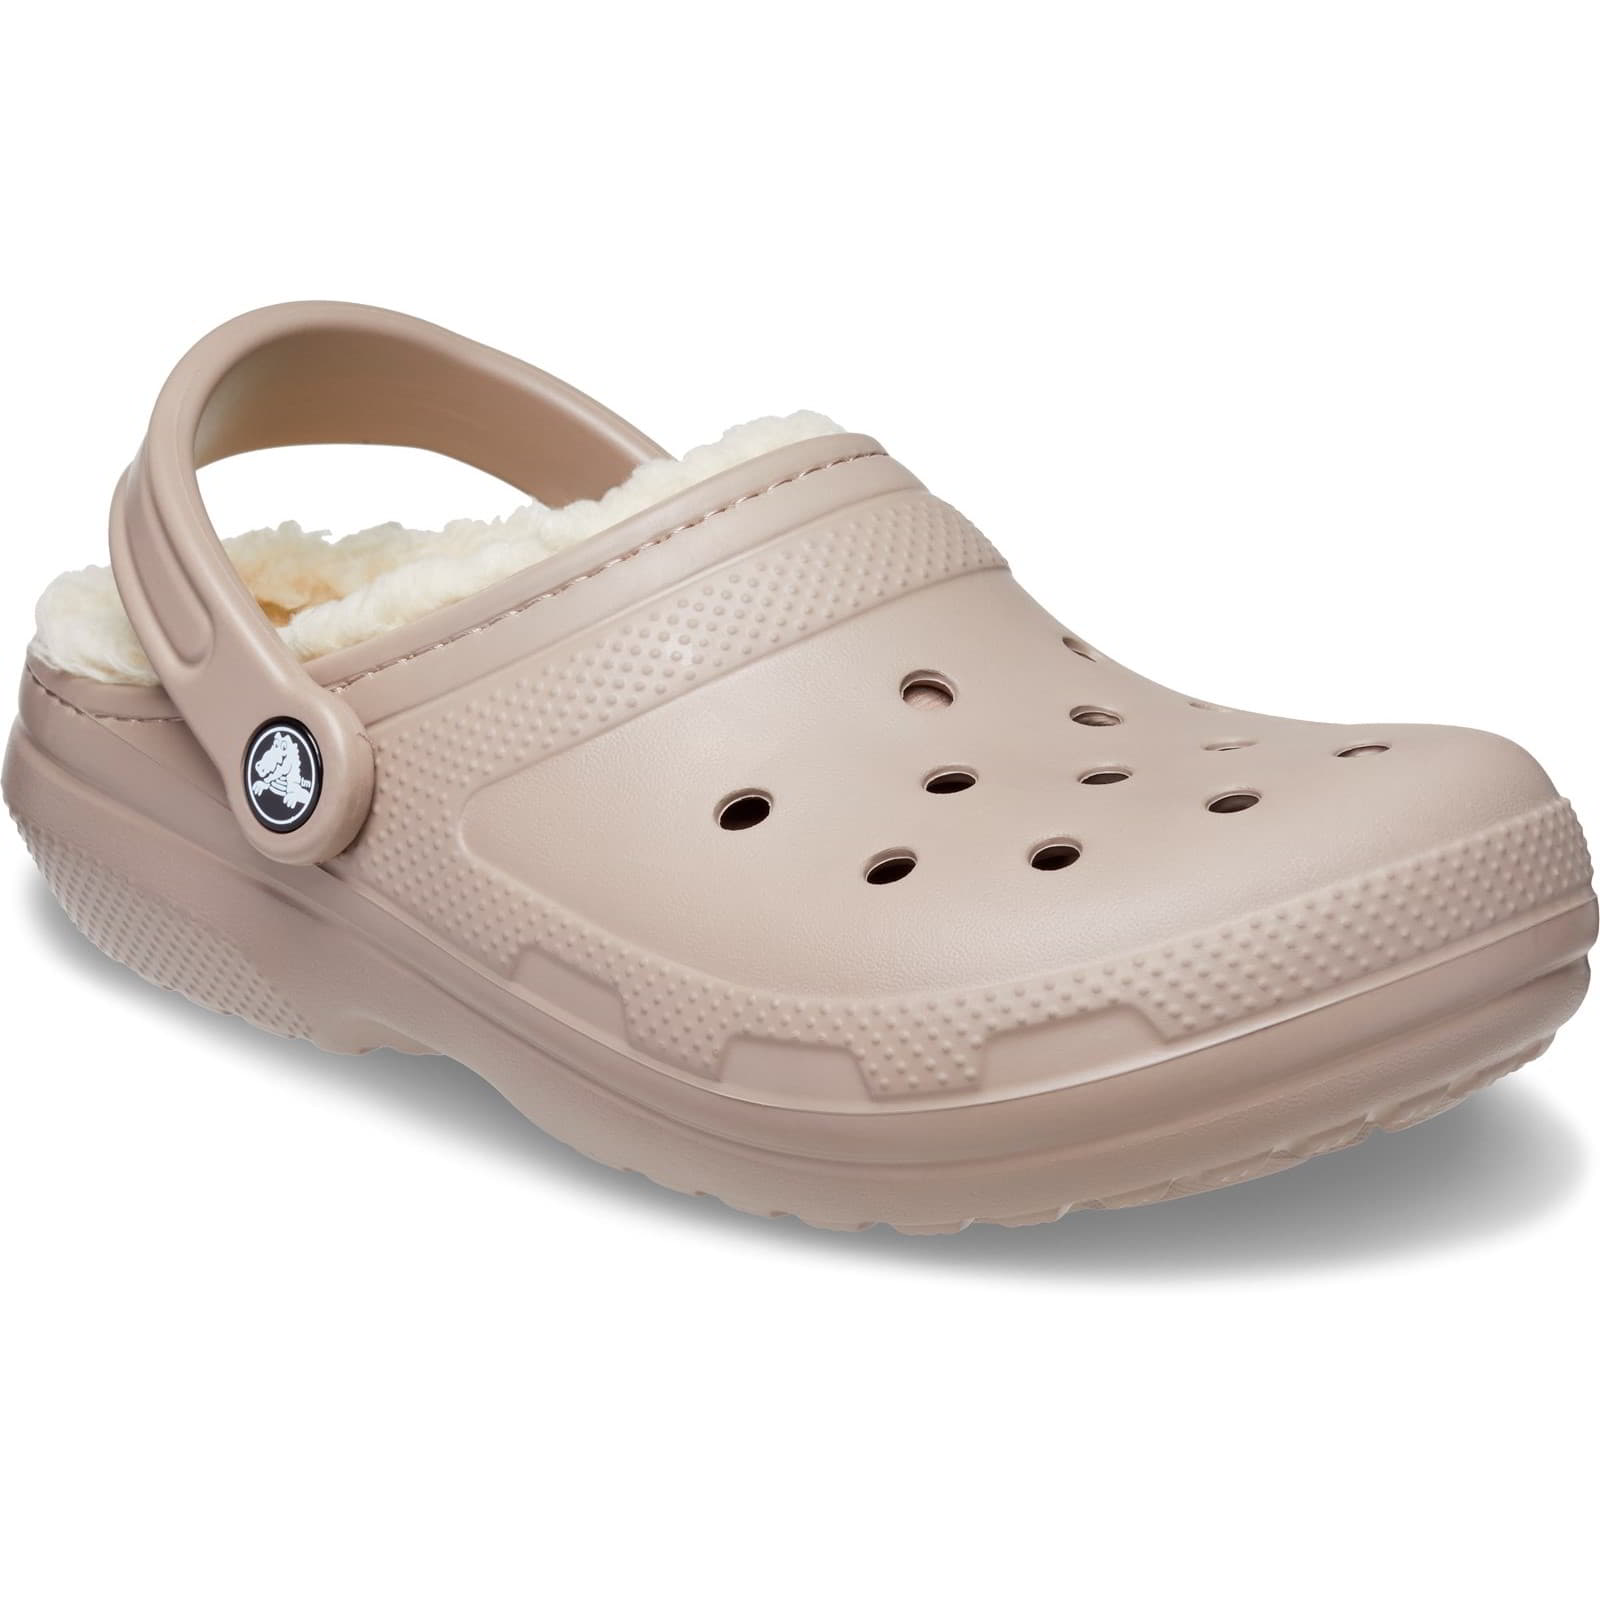 Crocs Men's Women's Classic Lined Clog Warm Slip On Slippers Shoes - UK M10-W11 / EU 45-46 / US M11-W13